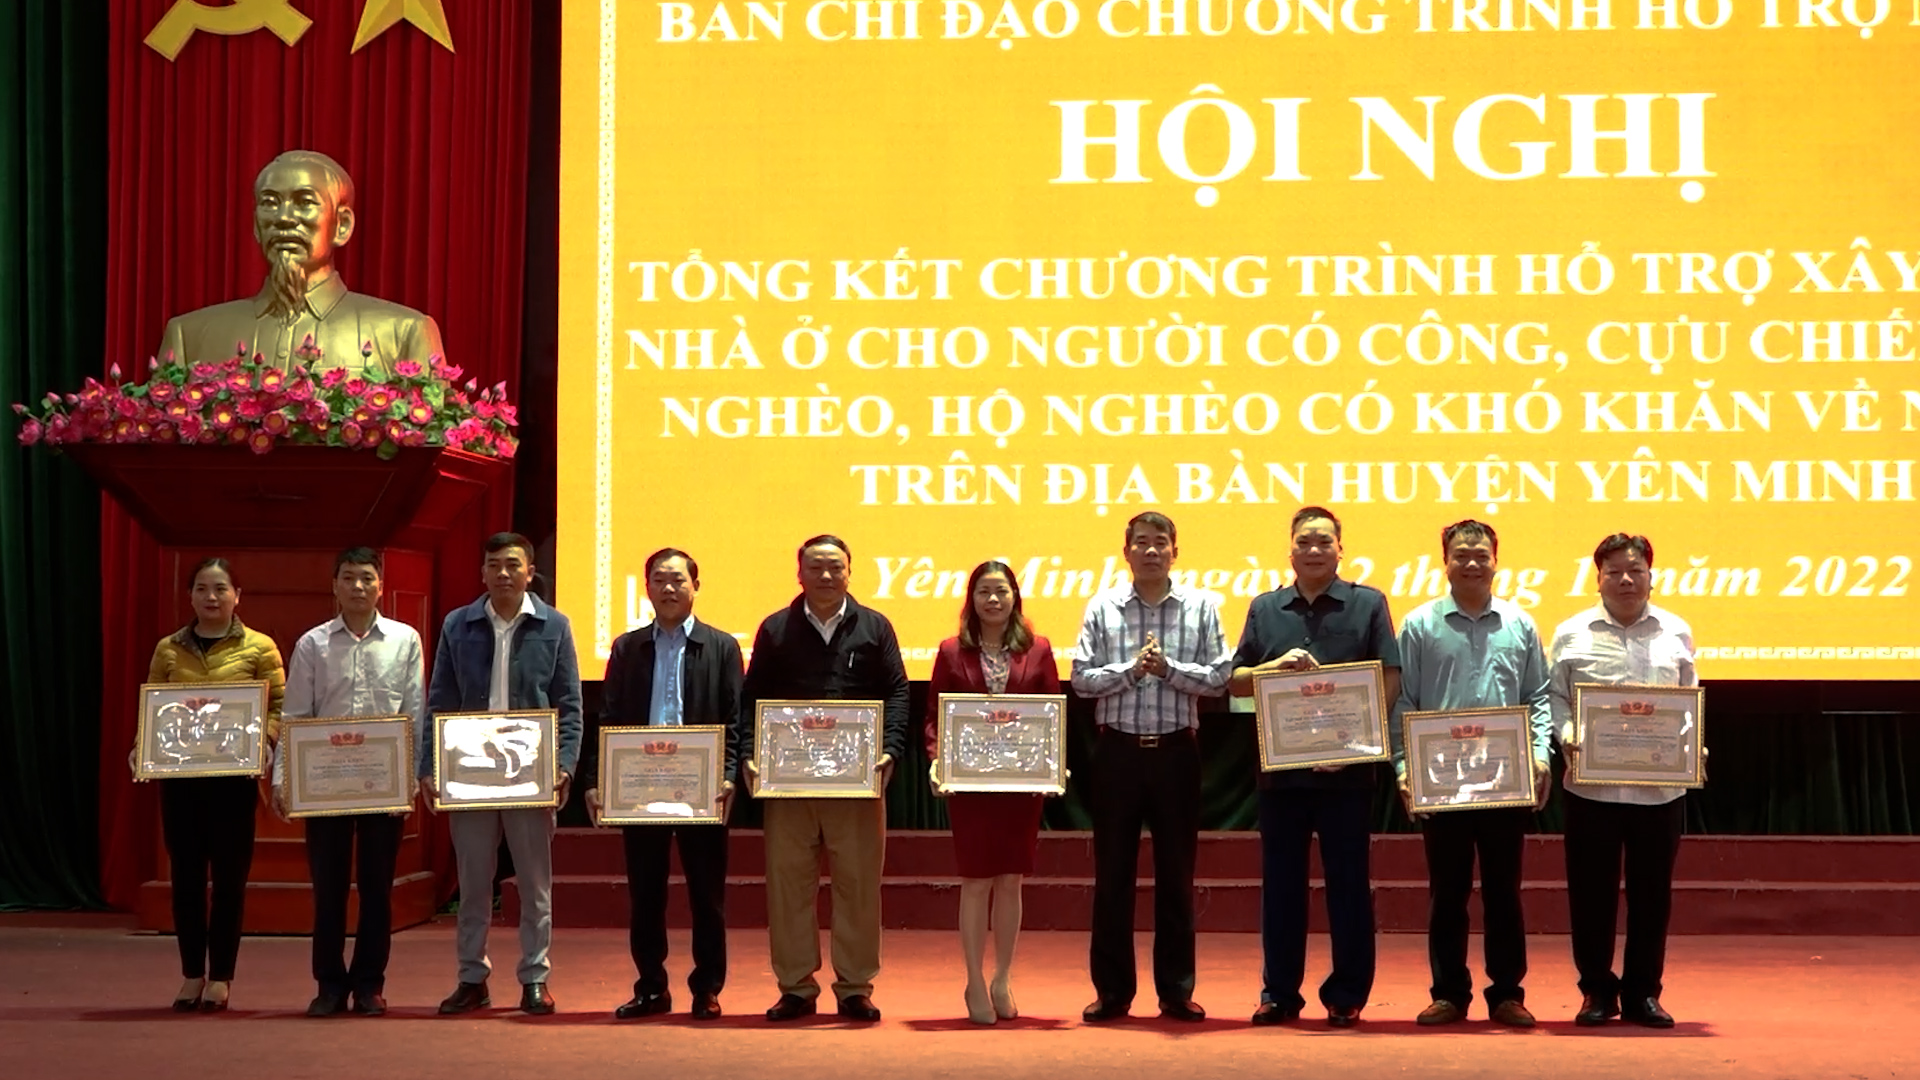 Yên Minh tổng kết chương trình hỗ trợ nhà ở cho người có công, CCB nghèo, hộ nghèo trên địa bàn huyện